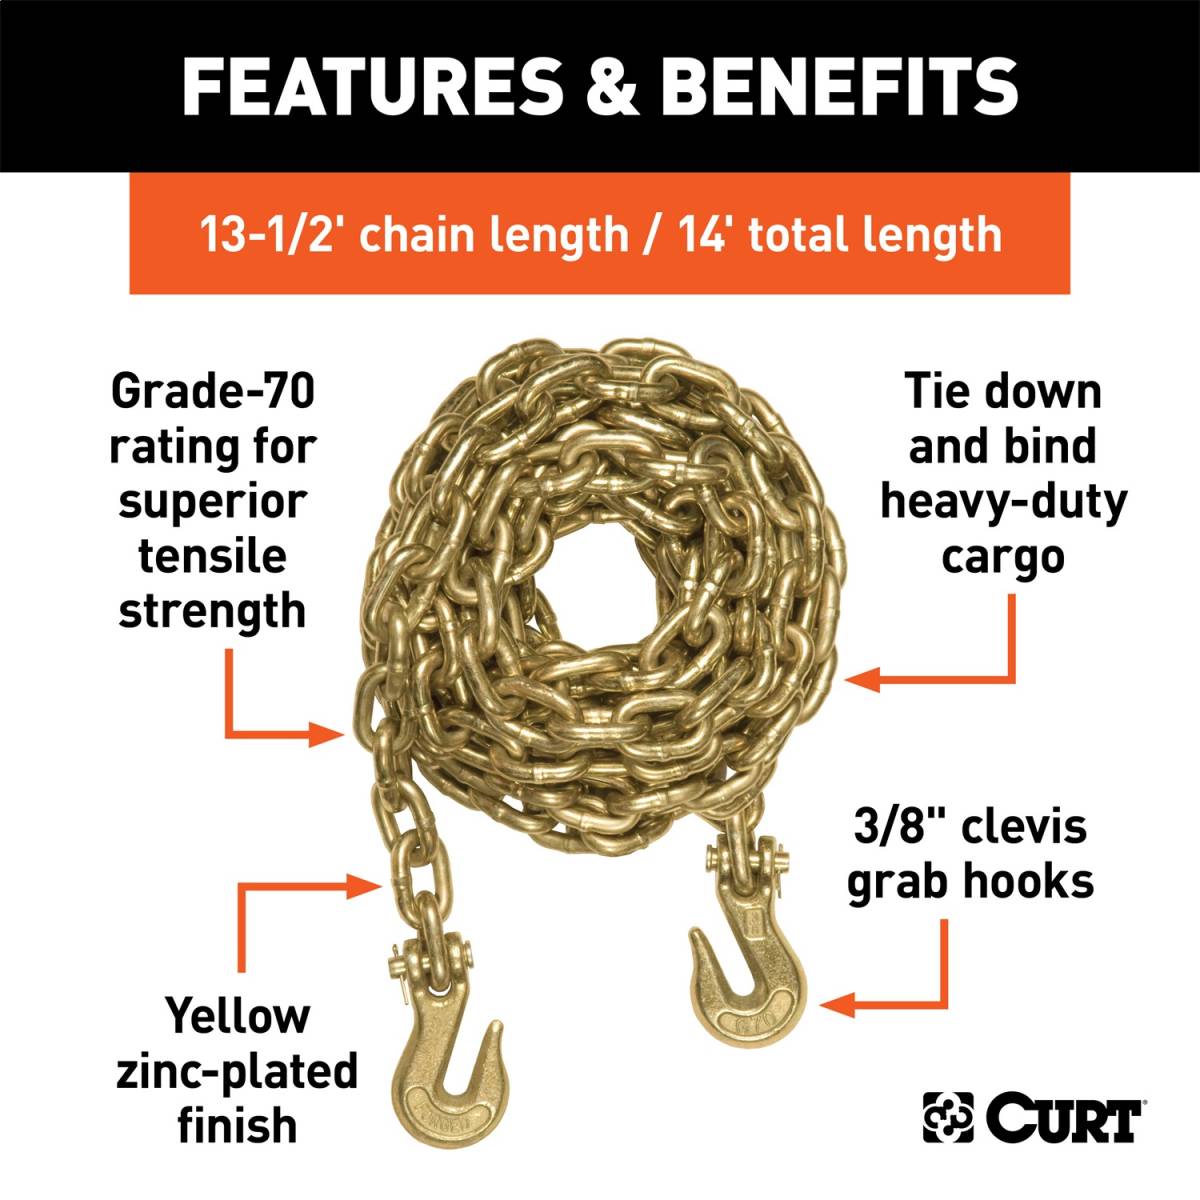 Curt 80040 Safety Chain